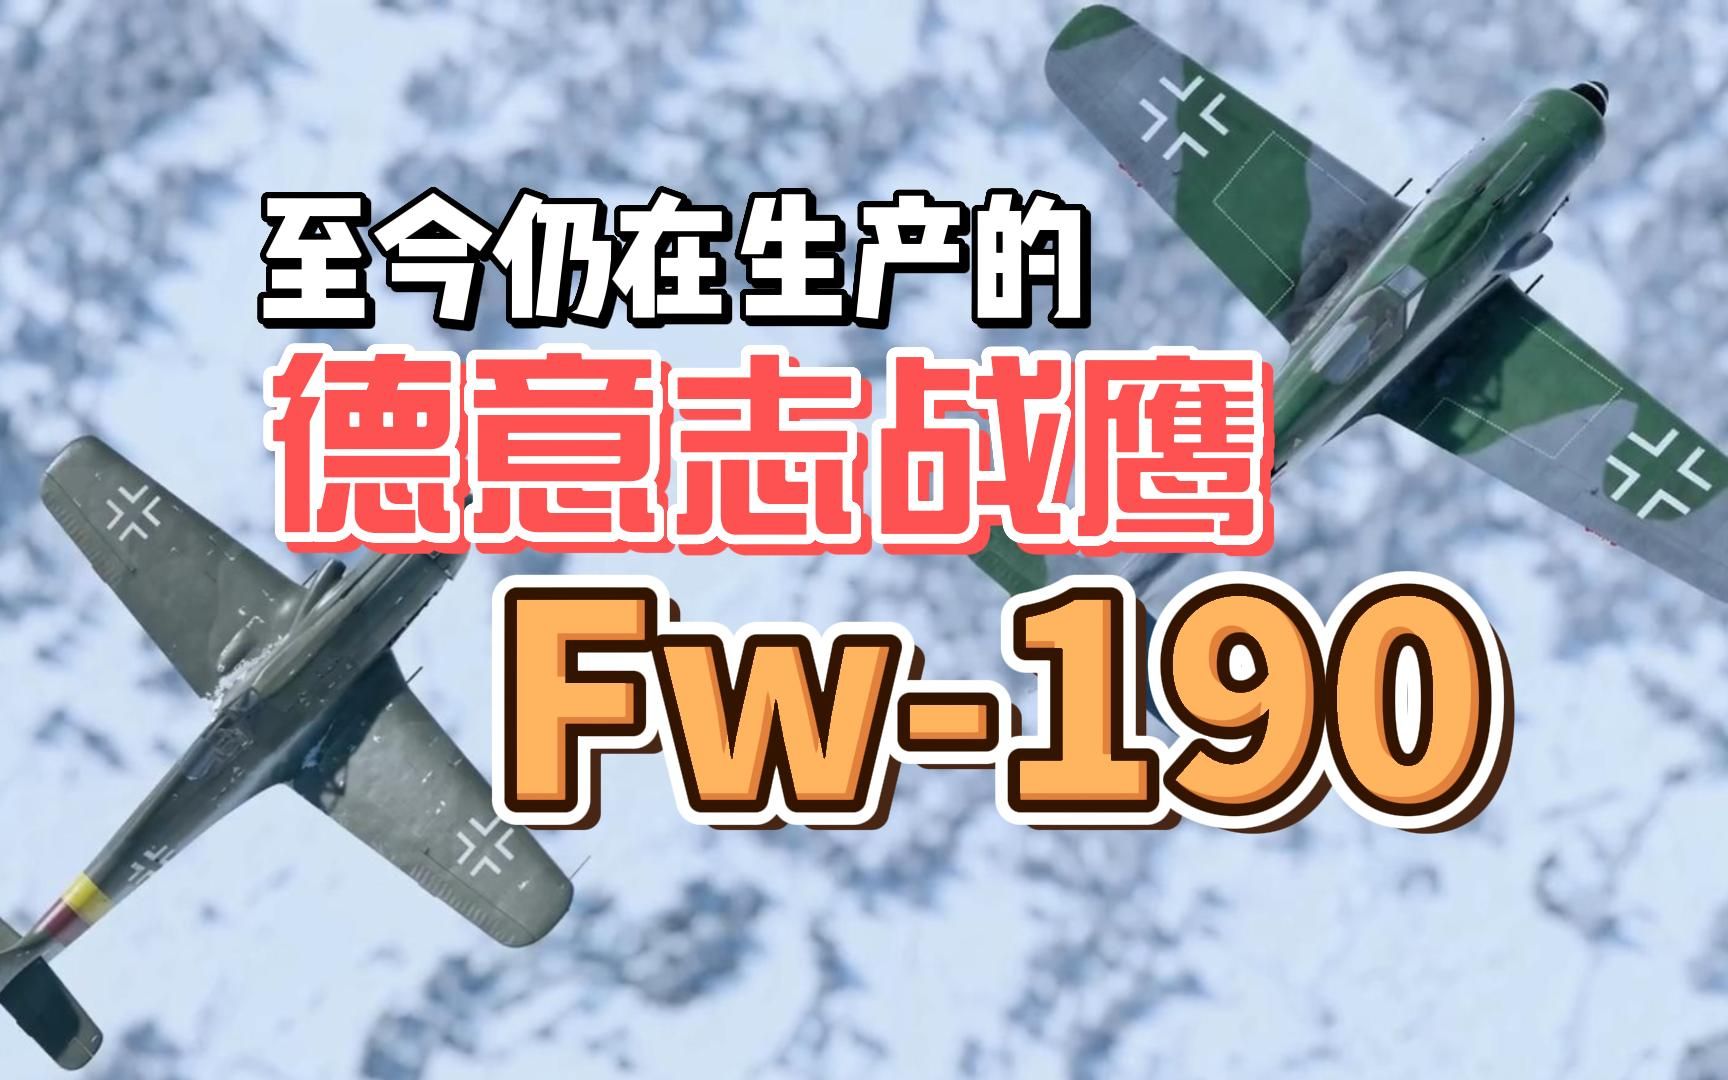 至今仍在生产的德意志战鹰 FW190 二战德国FW190战机的前世今生